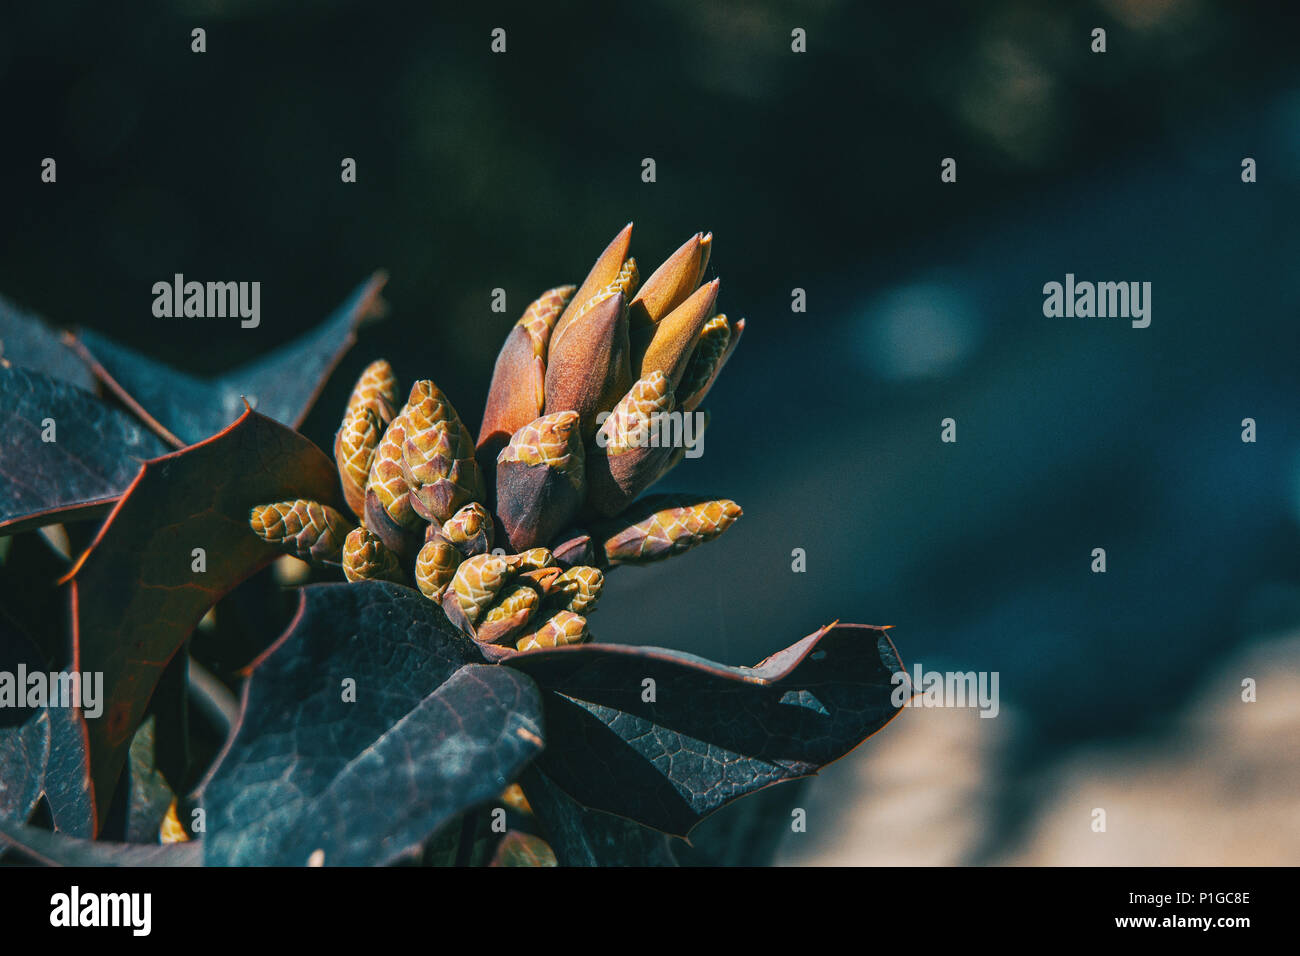 Leaves and flower of berberis aquifolium in nature Stock Photo